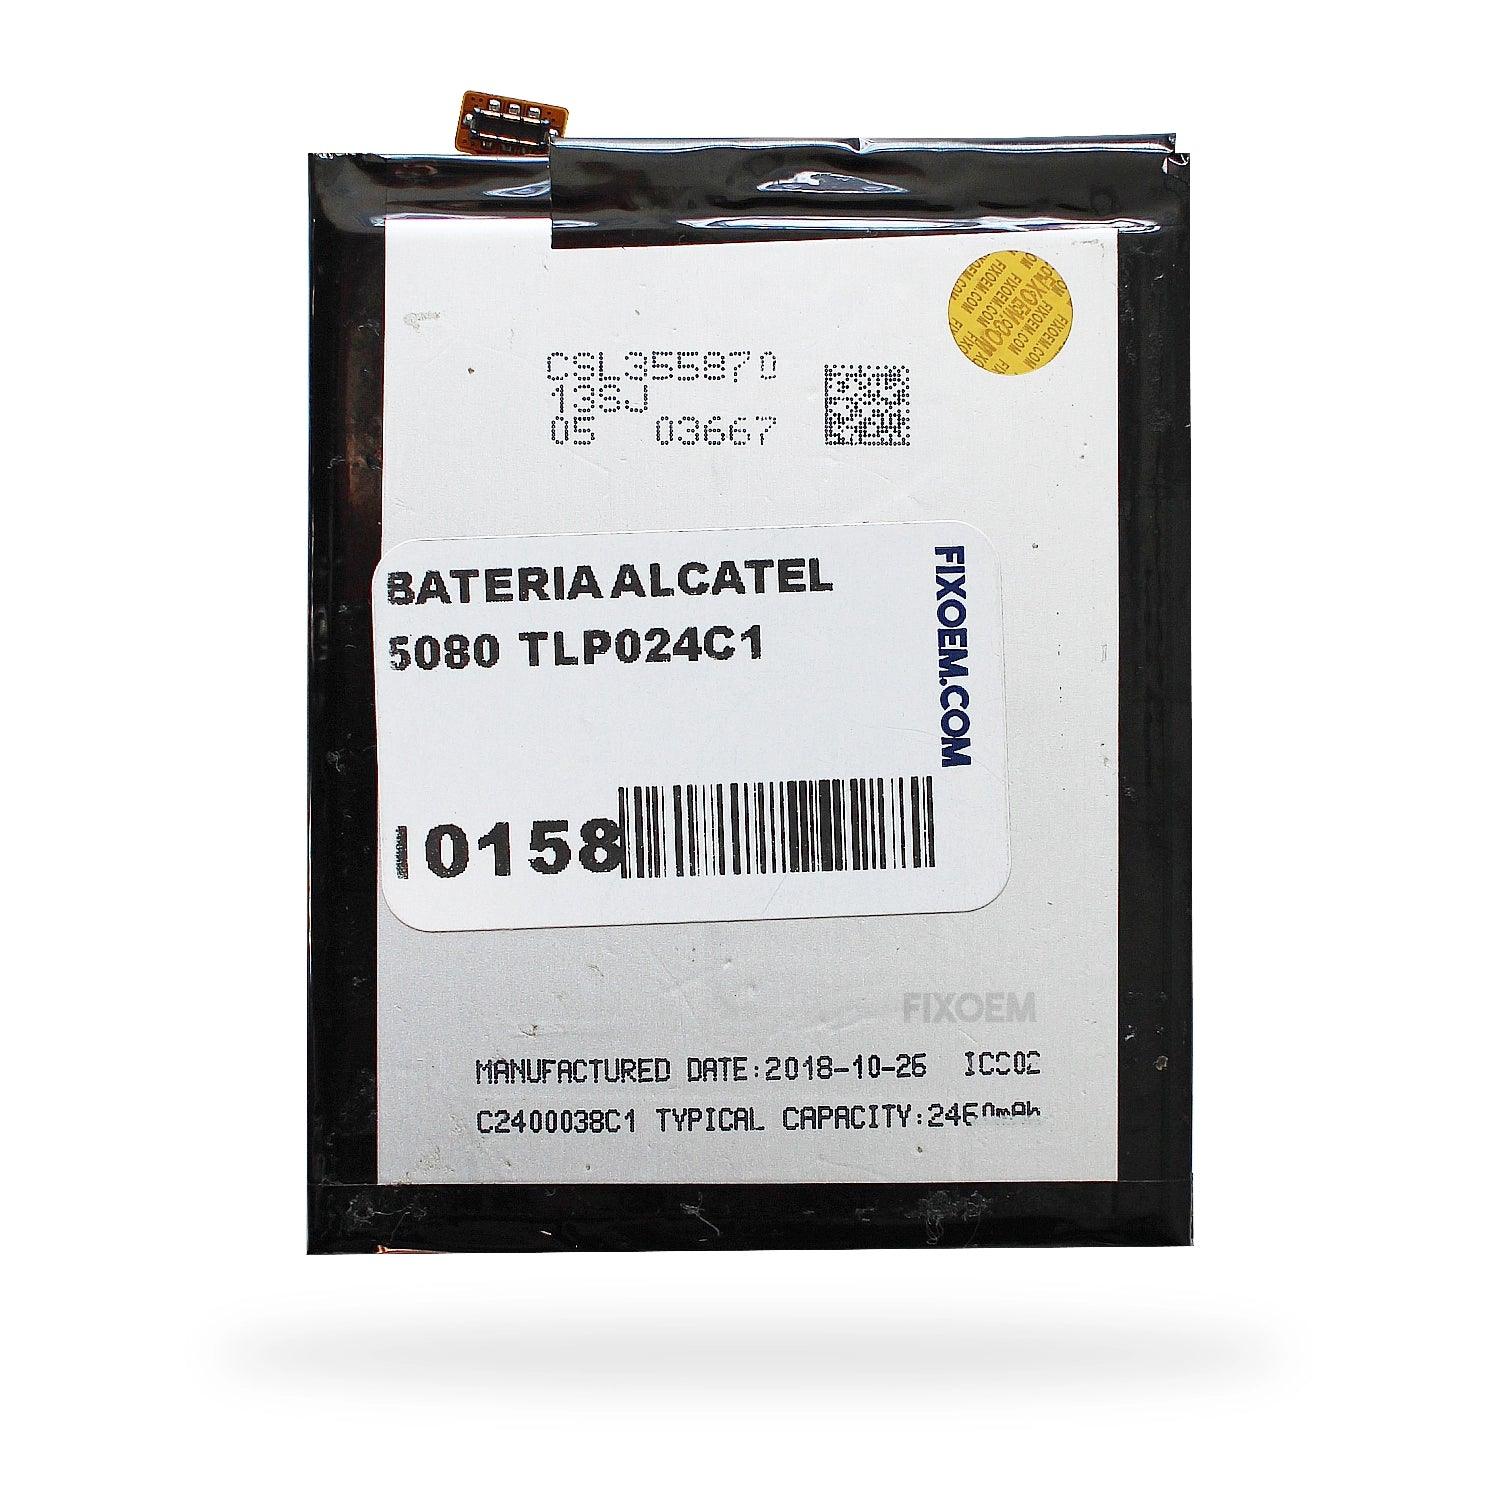 Bateria Alcatel 5080 Tlp024C1. a solo $ 130.00 Refaccion y puestos celulares, refurbish y microelectronica.- FixOEM